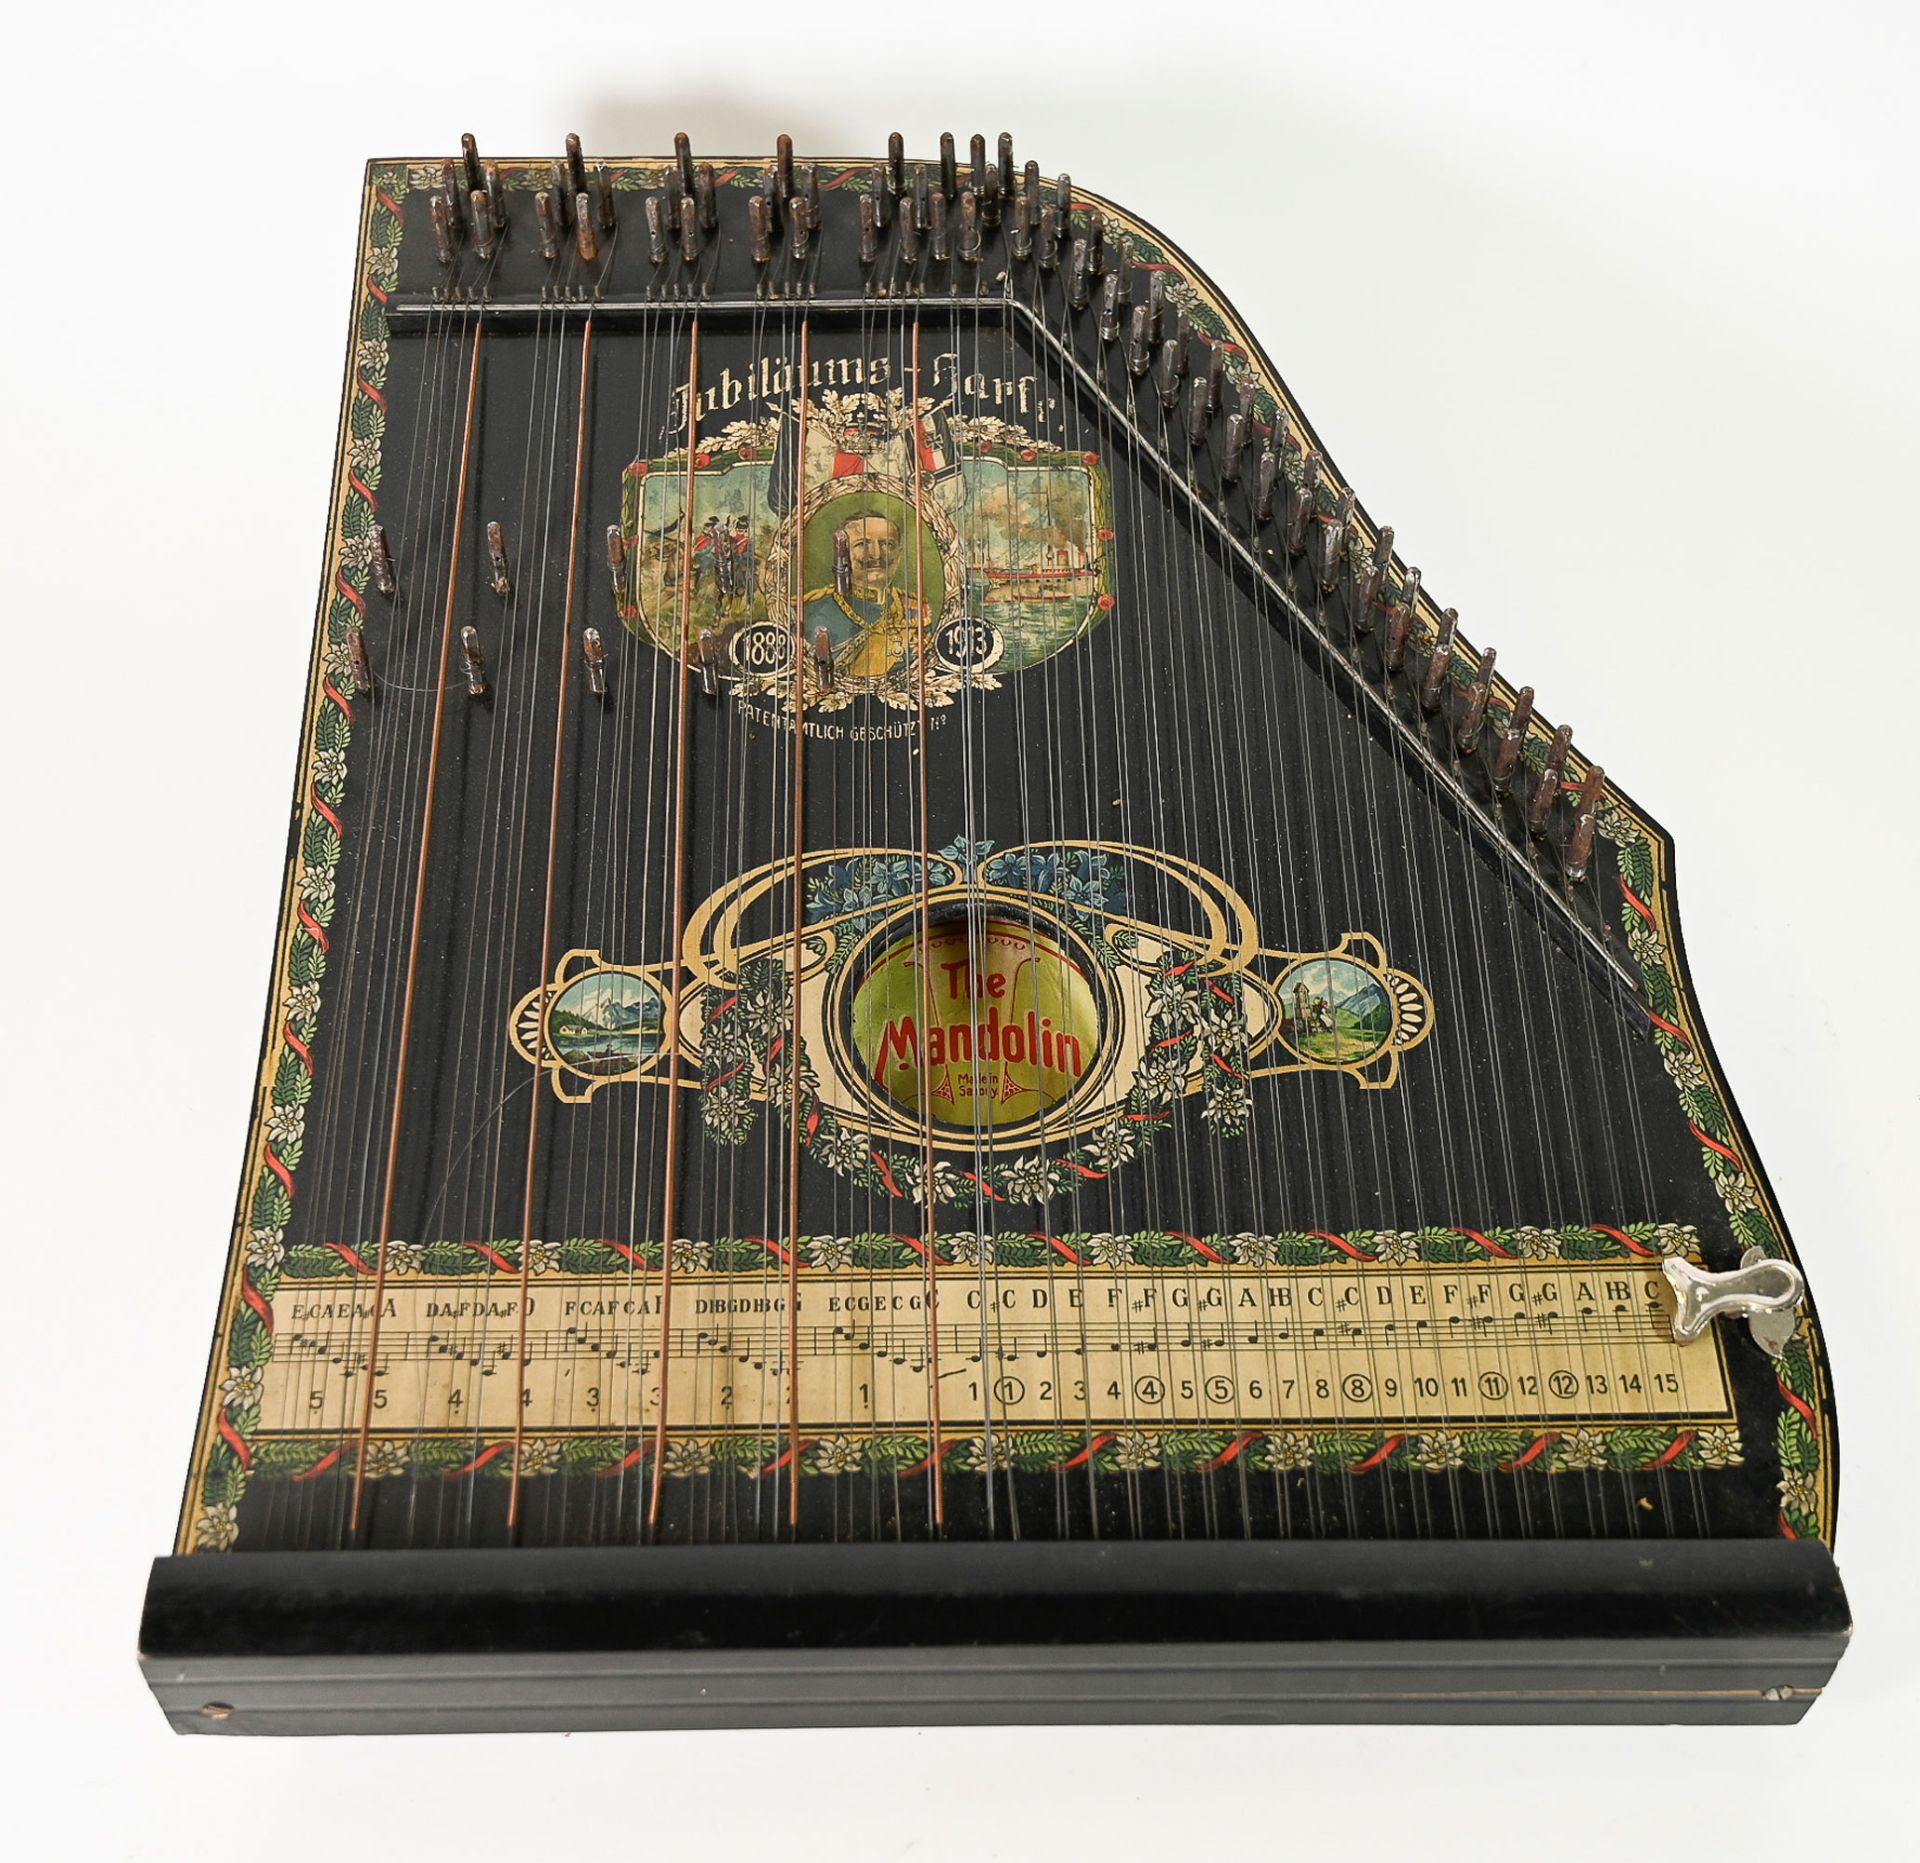 Jugendstil-Zither, The Mandolin Harp